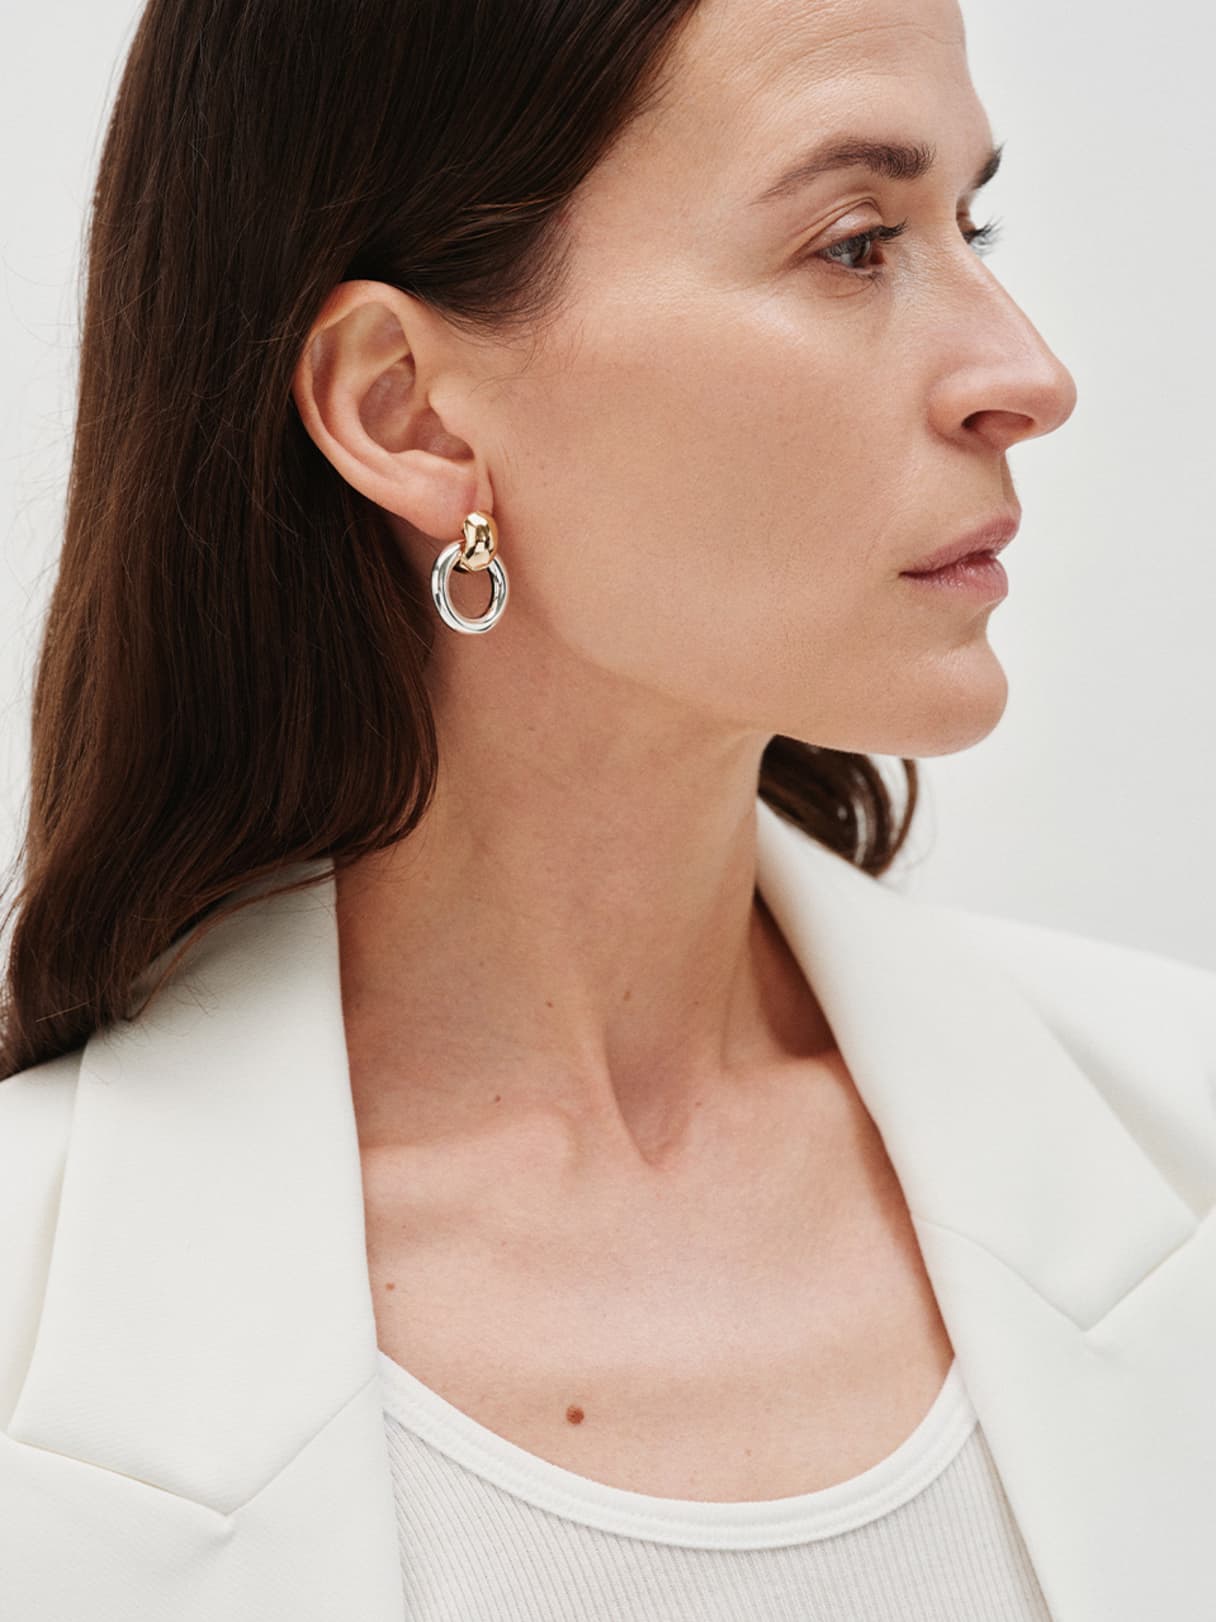 Female model wearing earrings